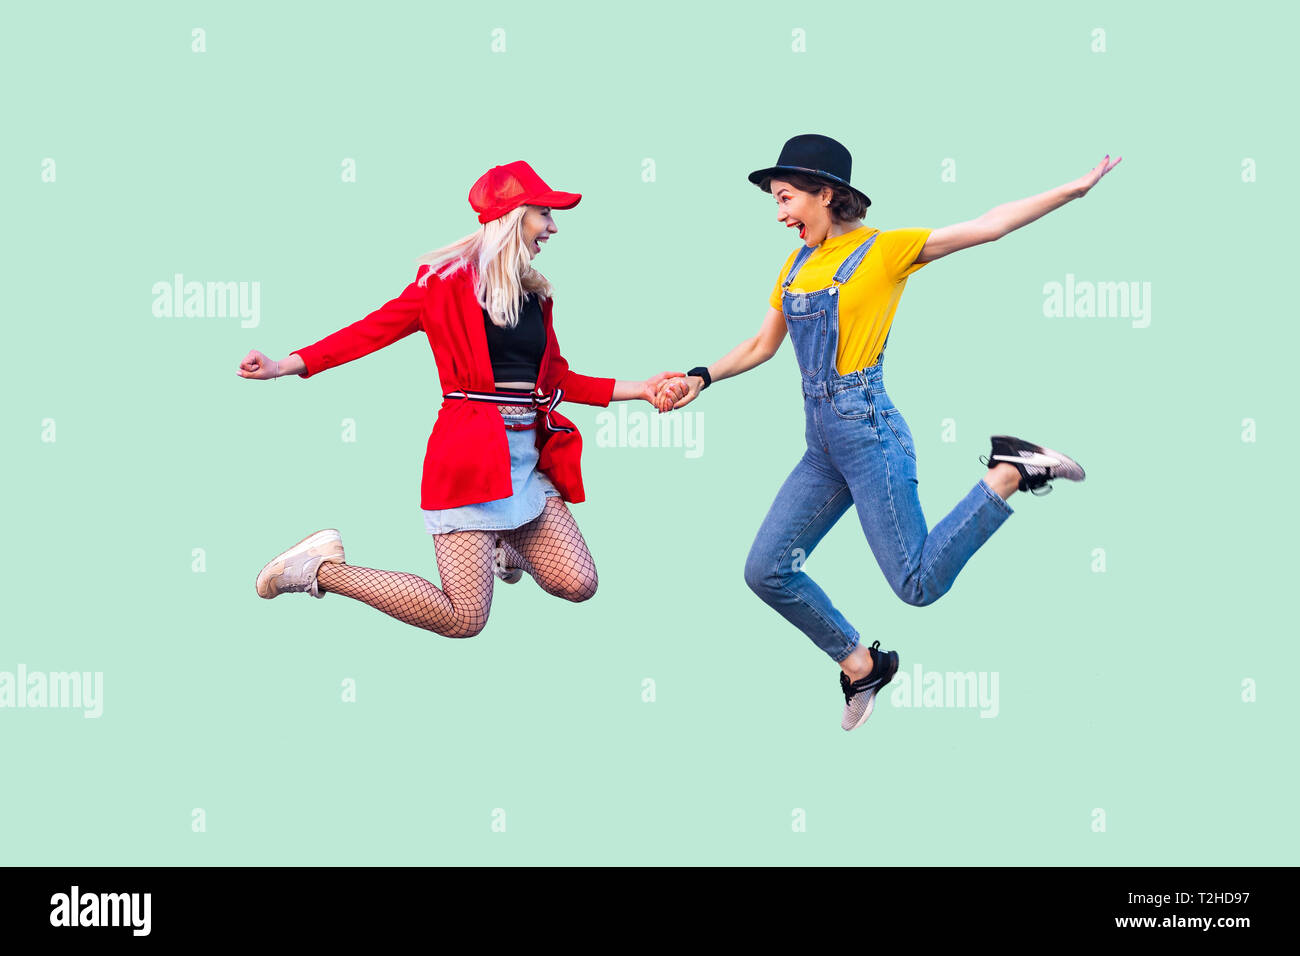 Volle Beine Körper größe Portrait von zwei glückliche Schreien stilvolle hipster Mädchen in modische Kleidung springen in die Luft und feierte einen Gewinn. Pflege Stockfoto